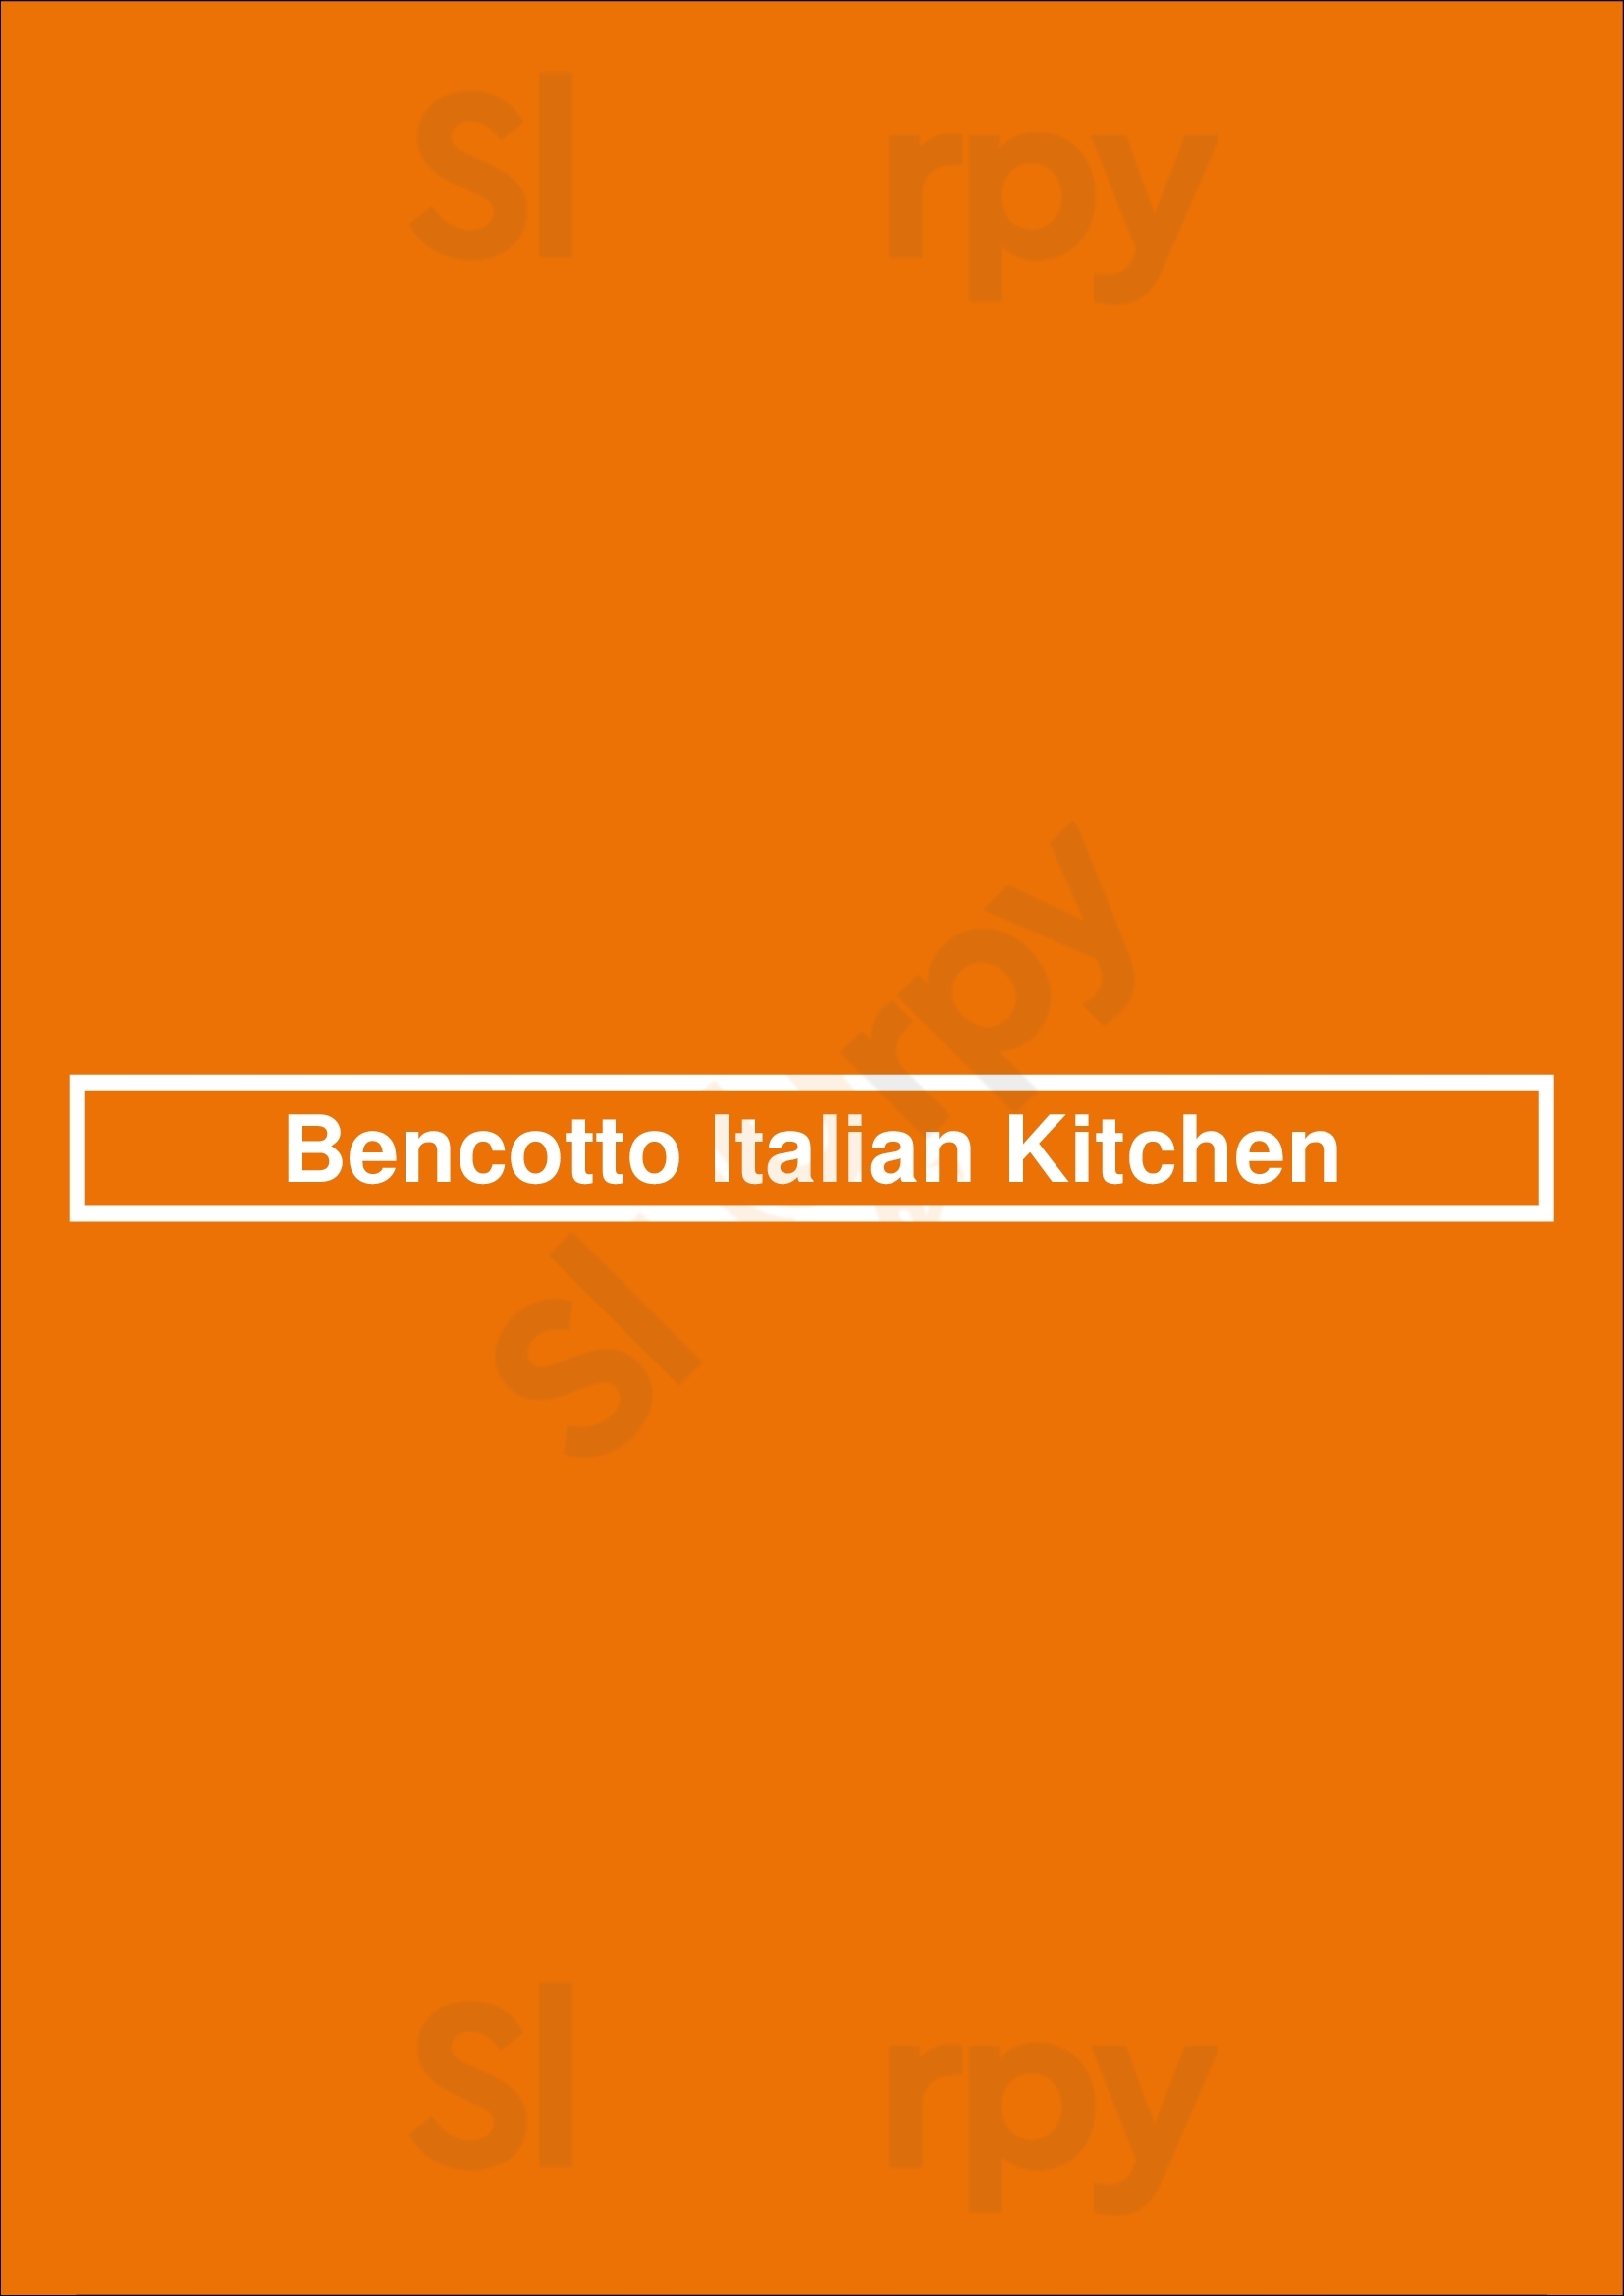 Bencotto Italian Kitchen San Diego Menu - 1